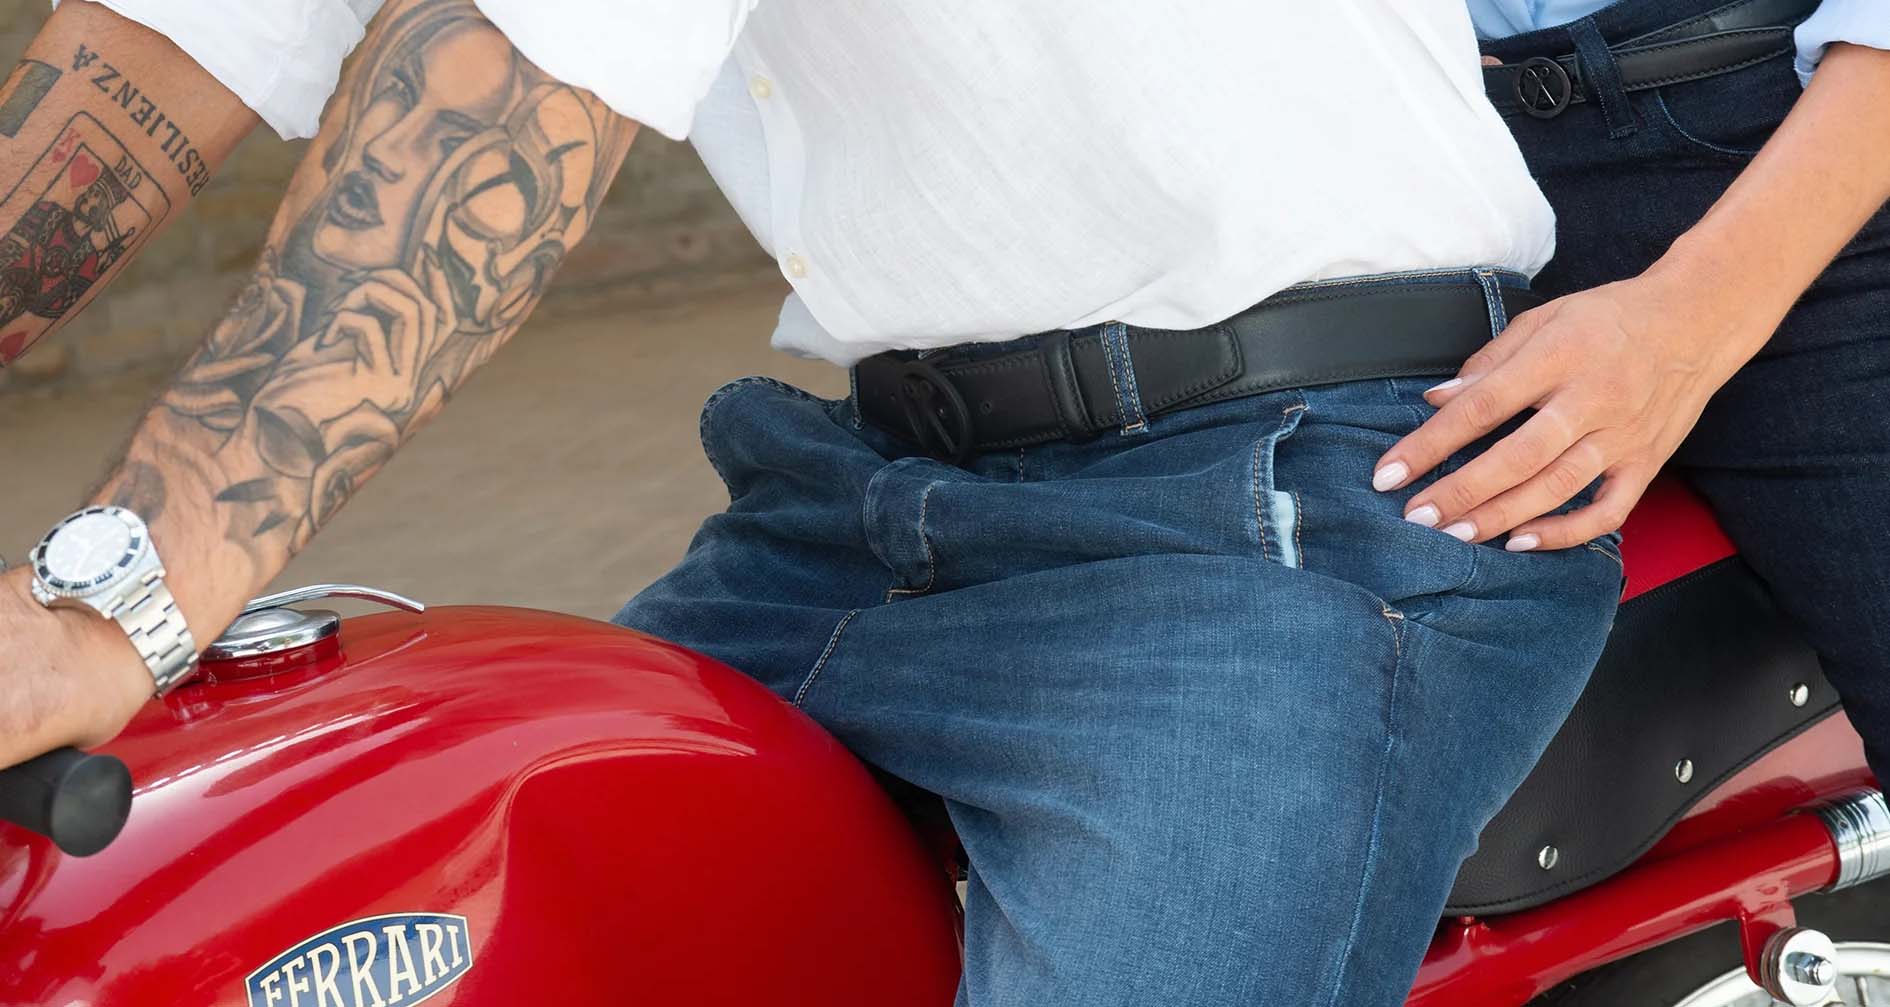 Belts on ferrari motorcycle 